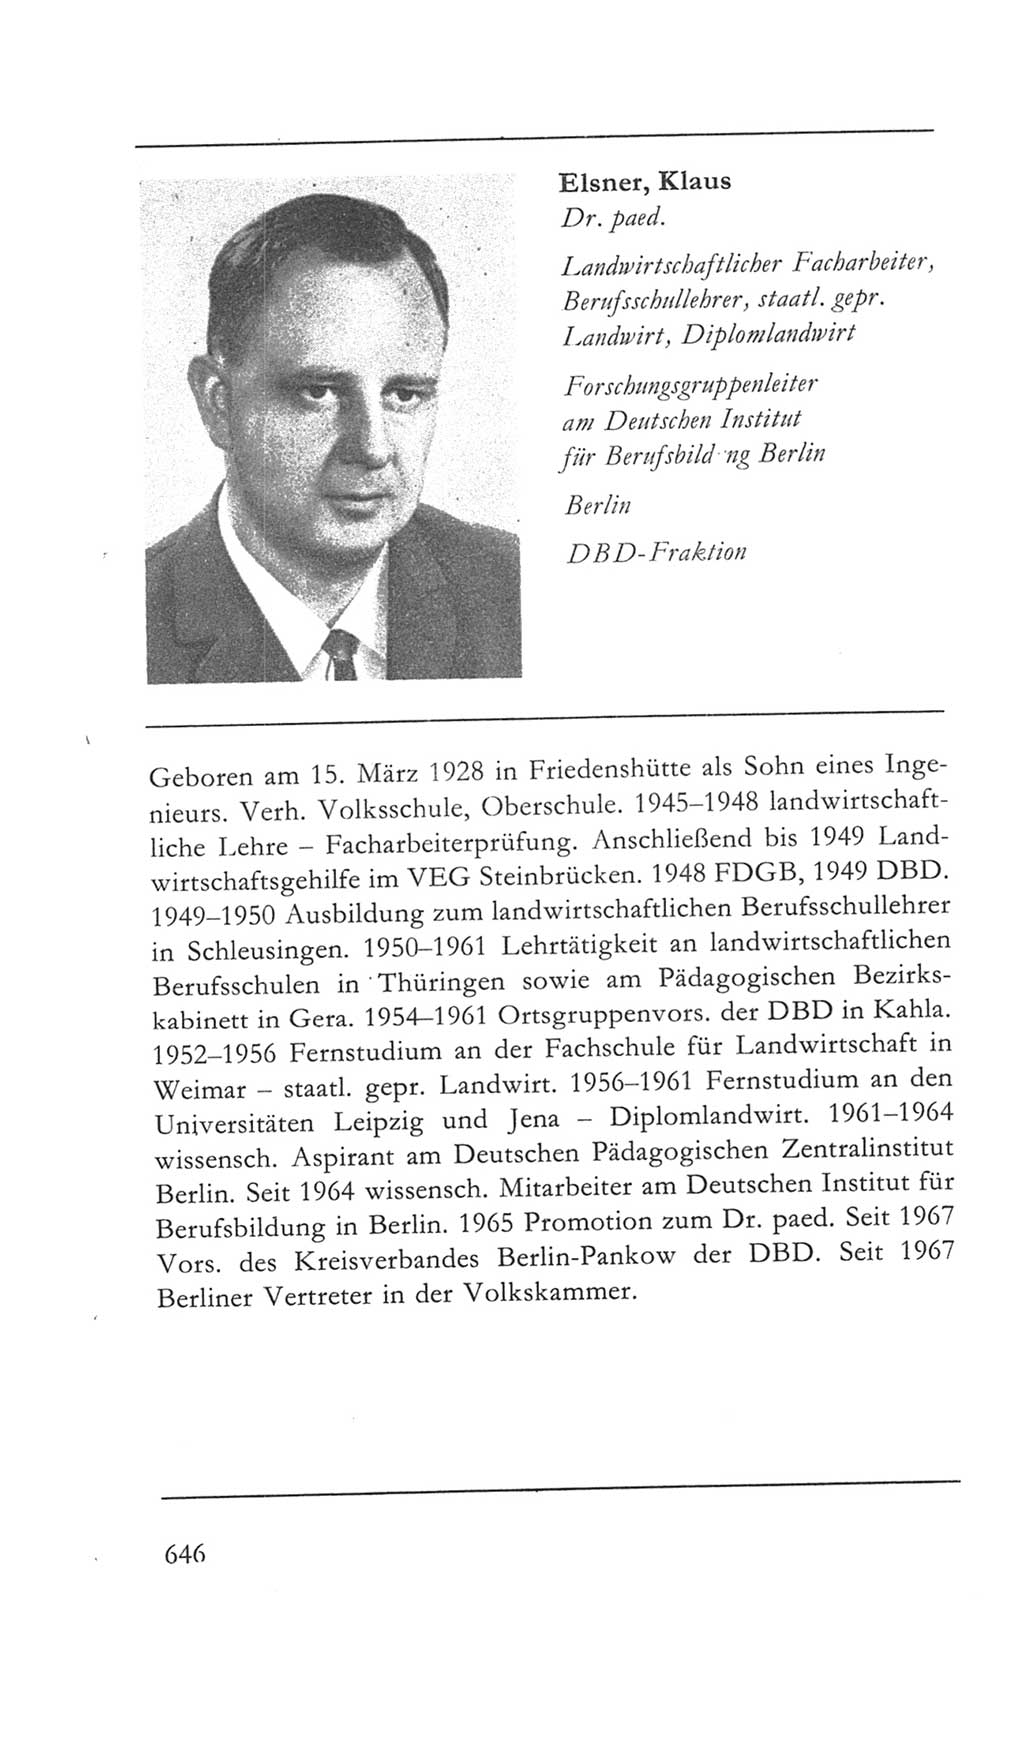 Volkskammer (VK) der Deutschen Demokratischen Republik (DDR) 5. Wahlperiode 1967-1971, Seite 646 (VK. DDR 5. WP. 1967-1971, S. 646)